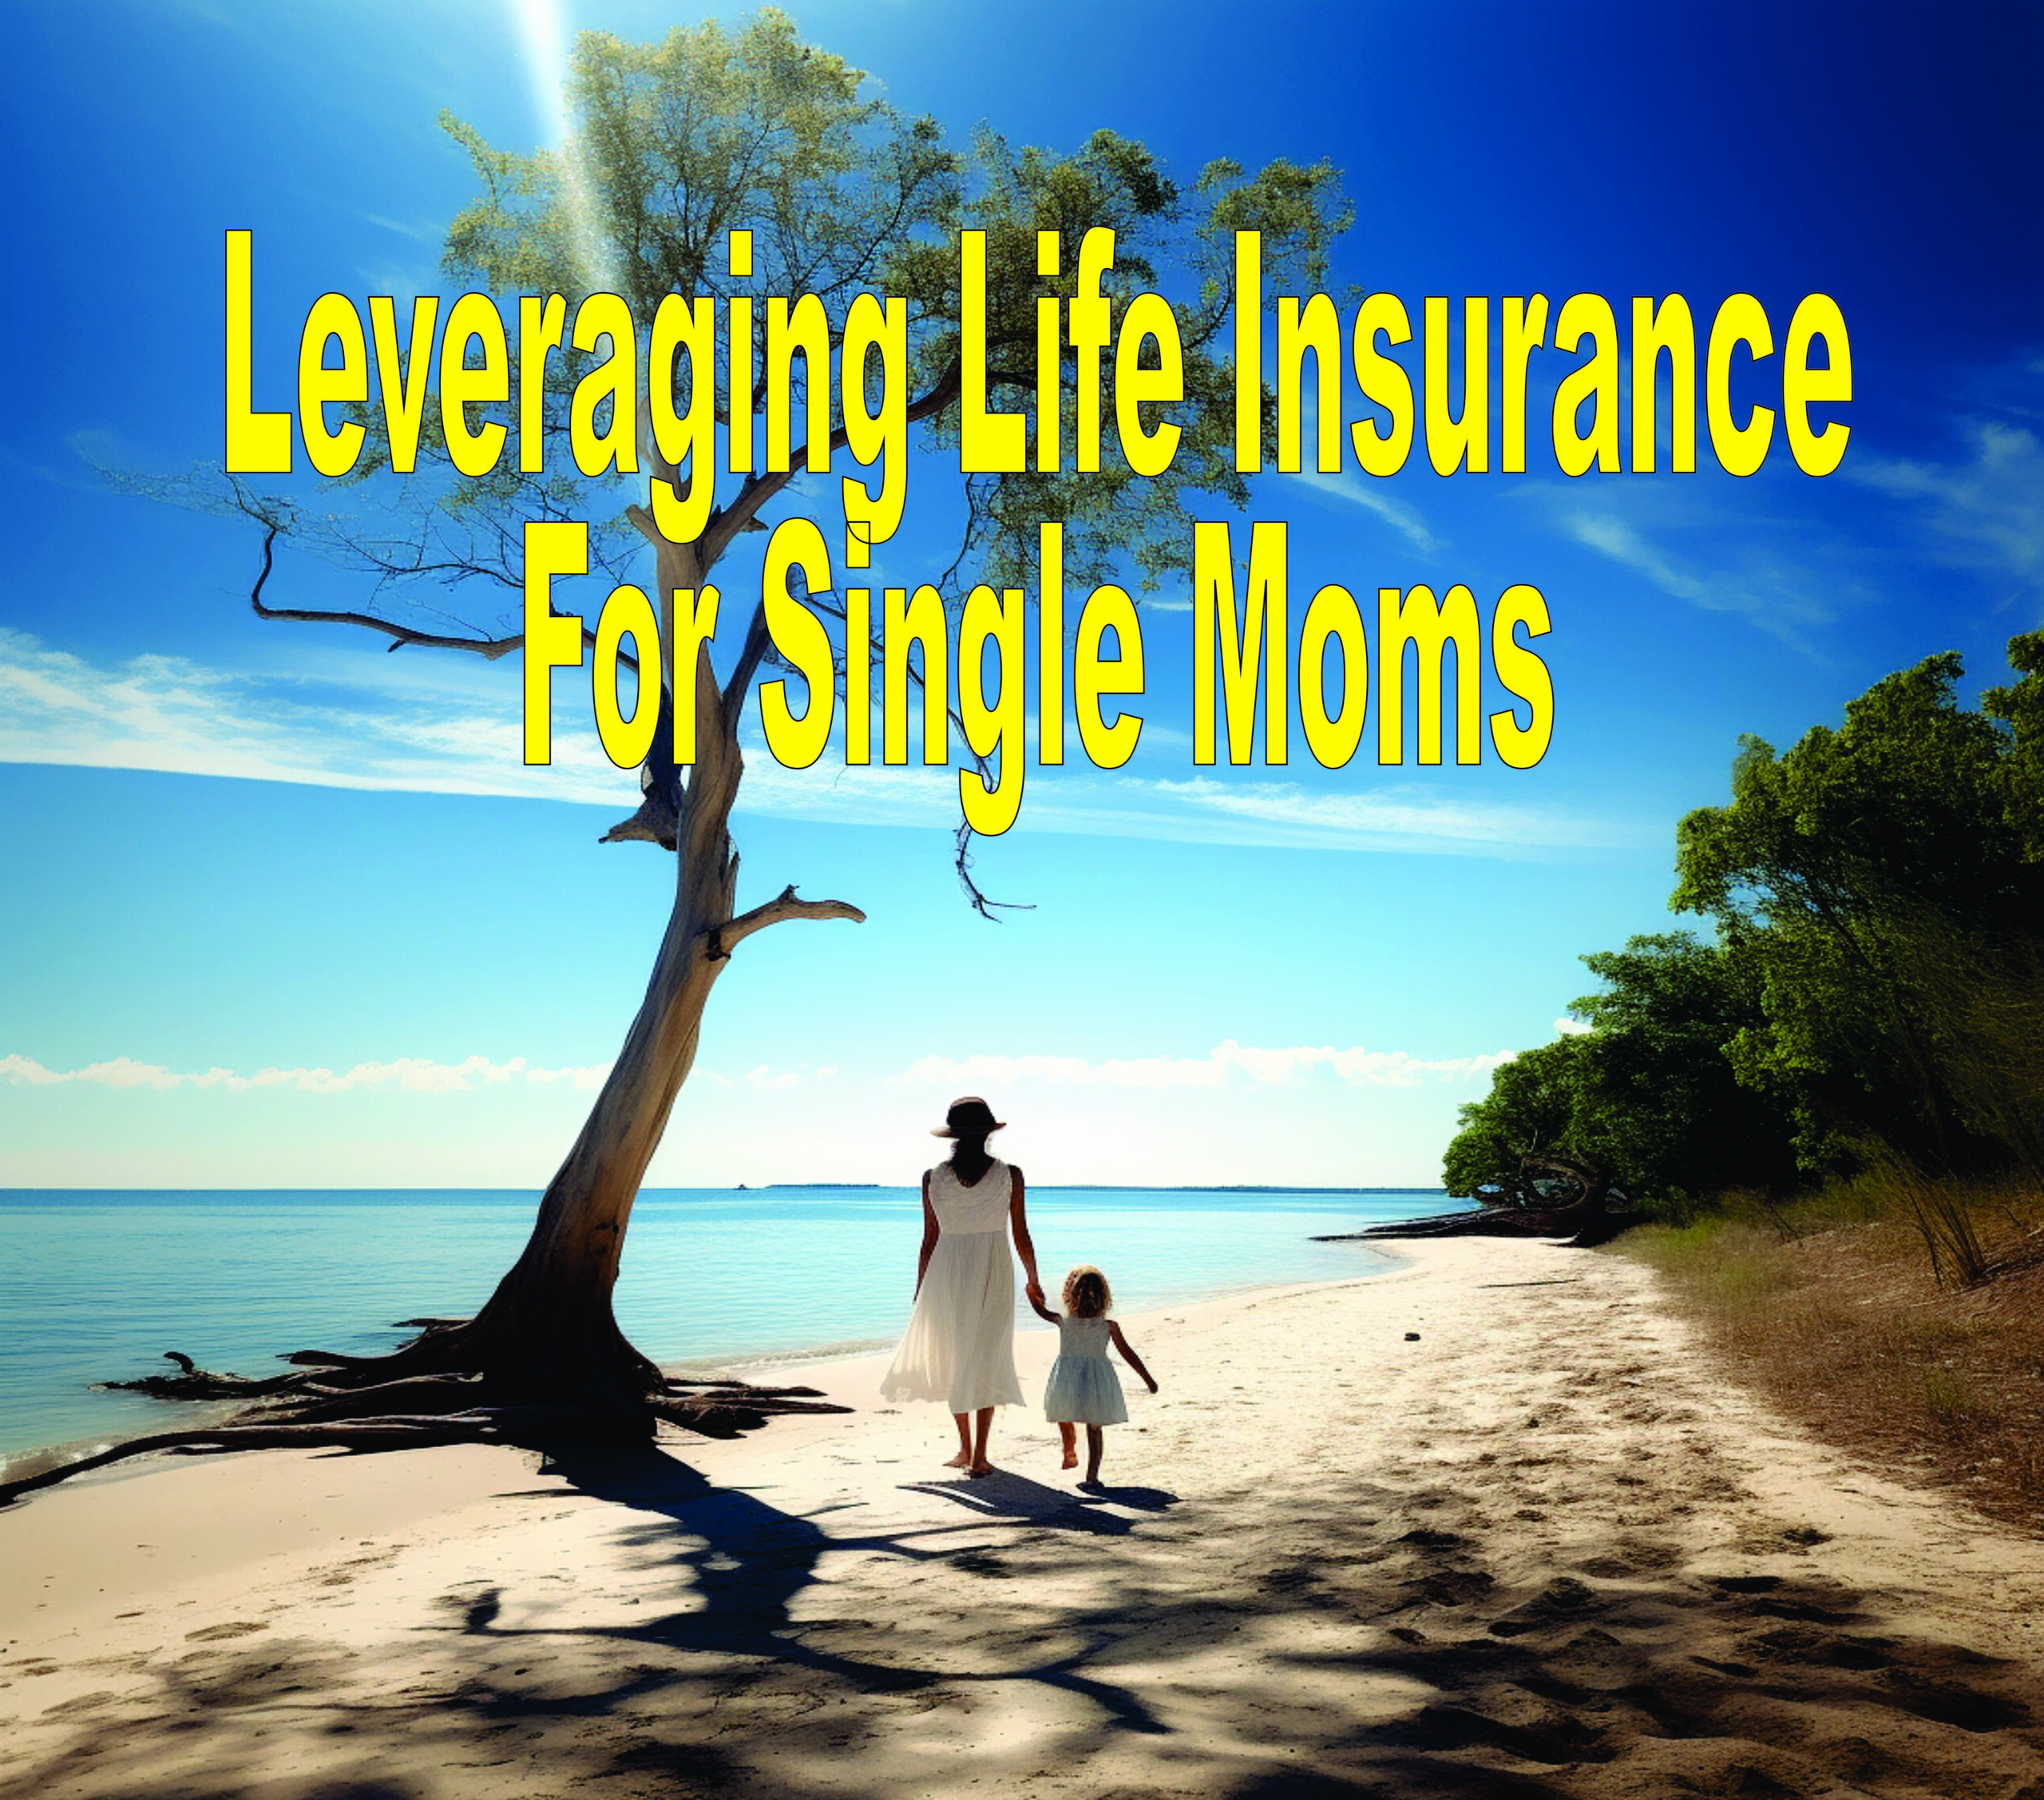 Leveraging Life Insurance For Single Moms